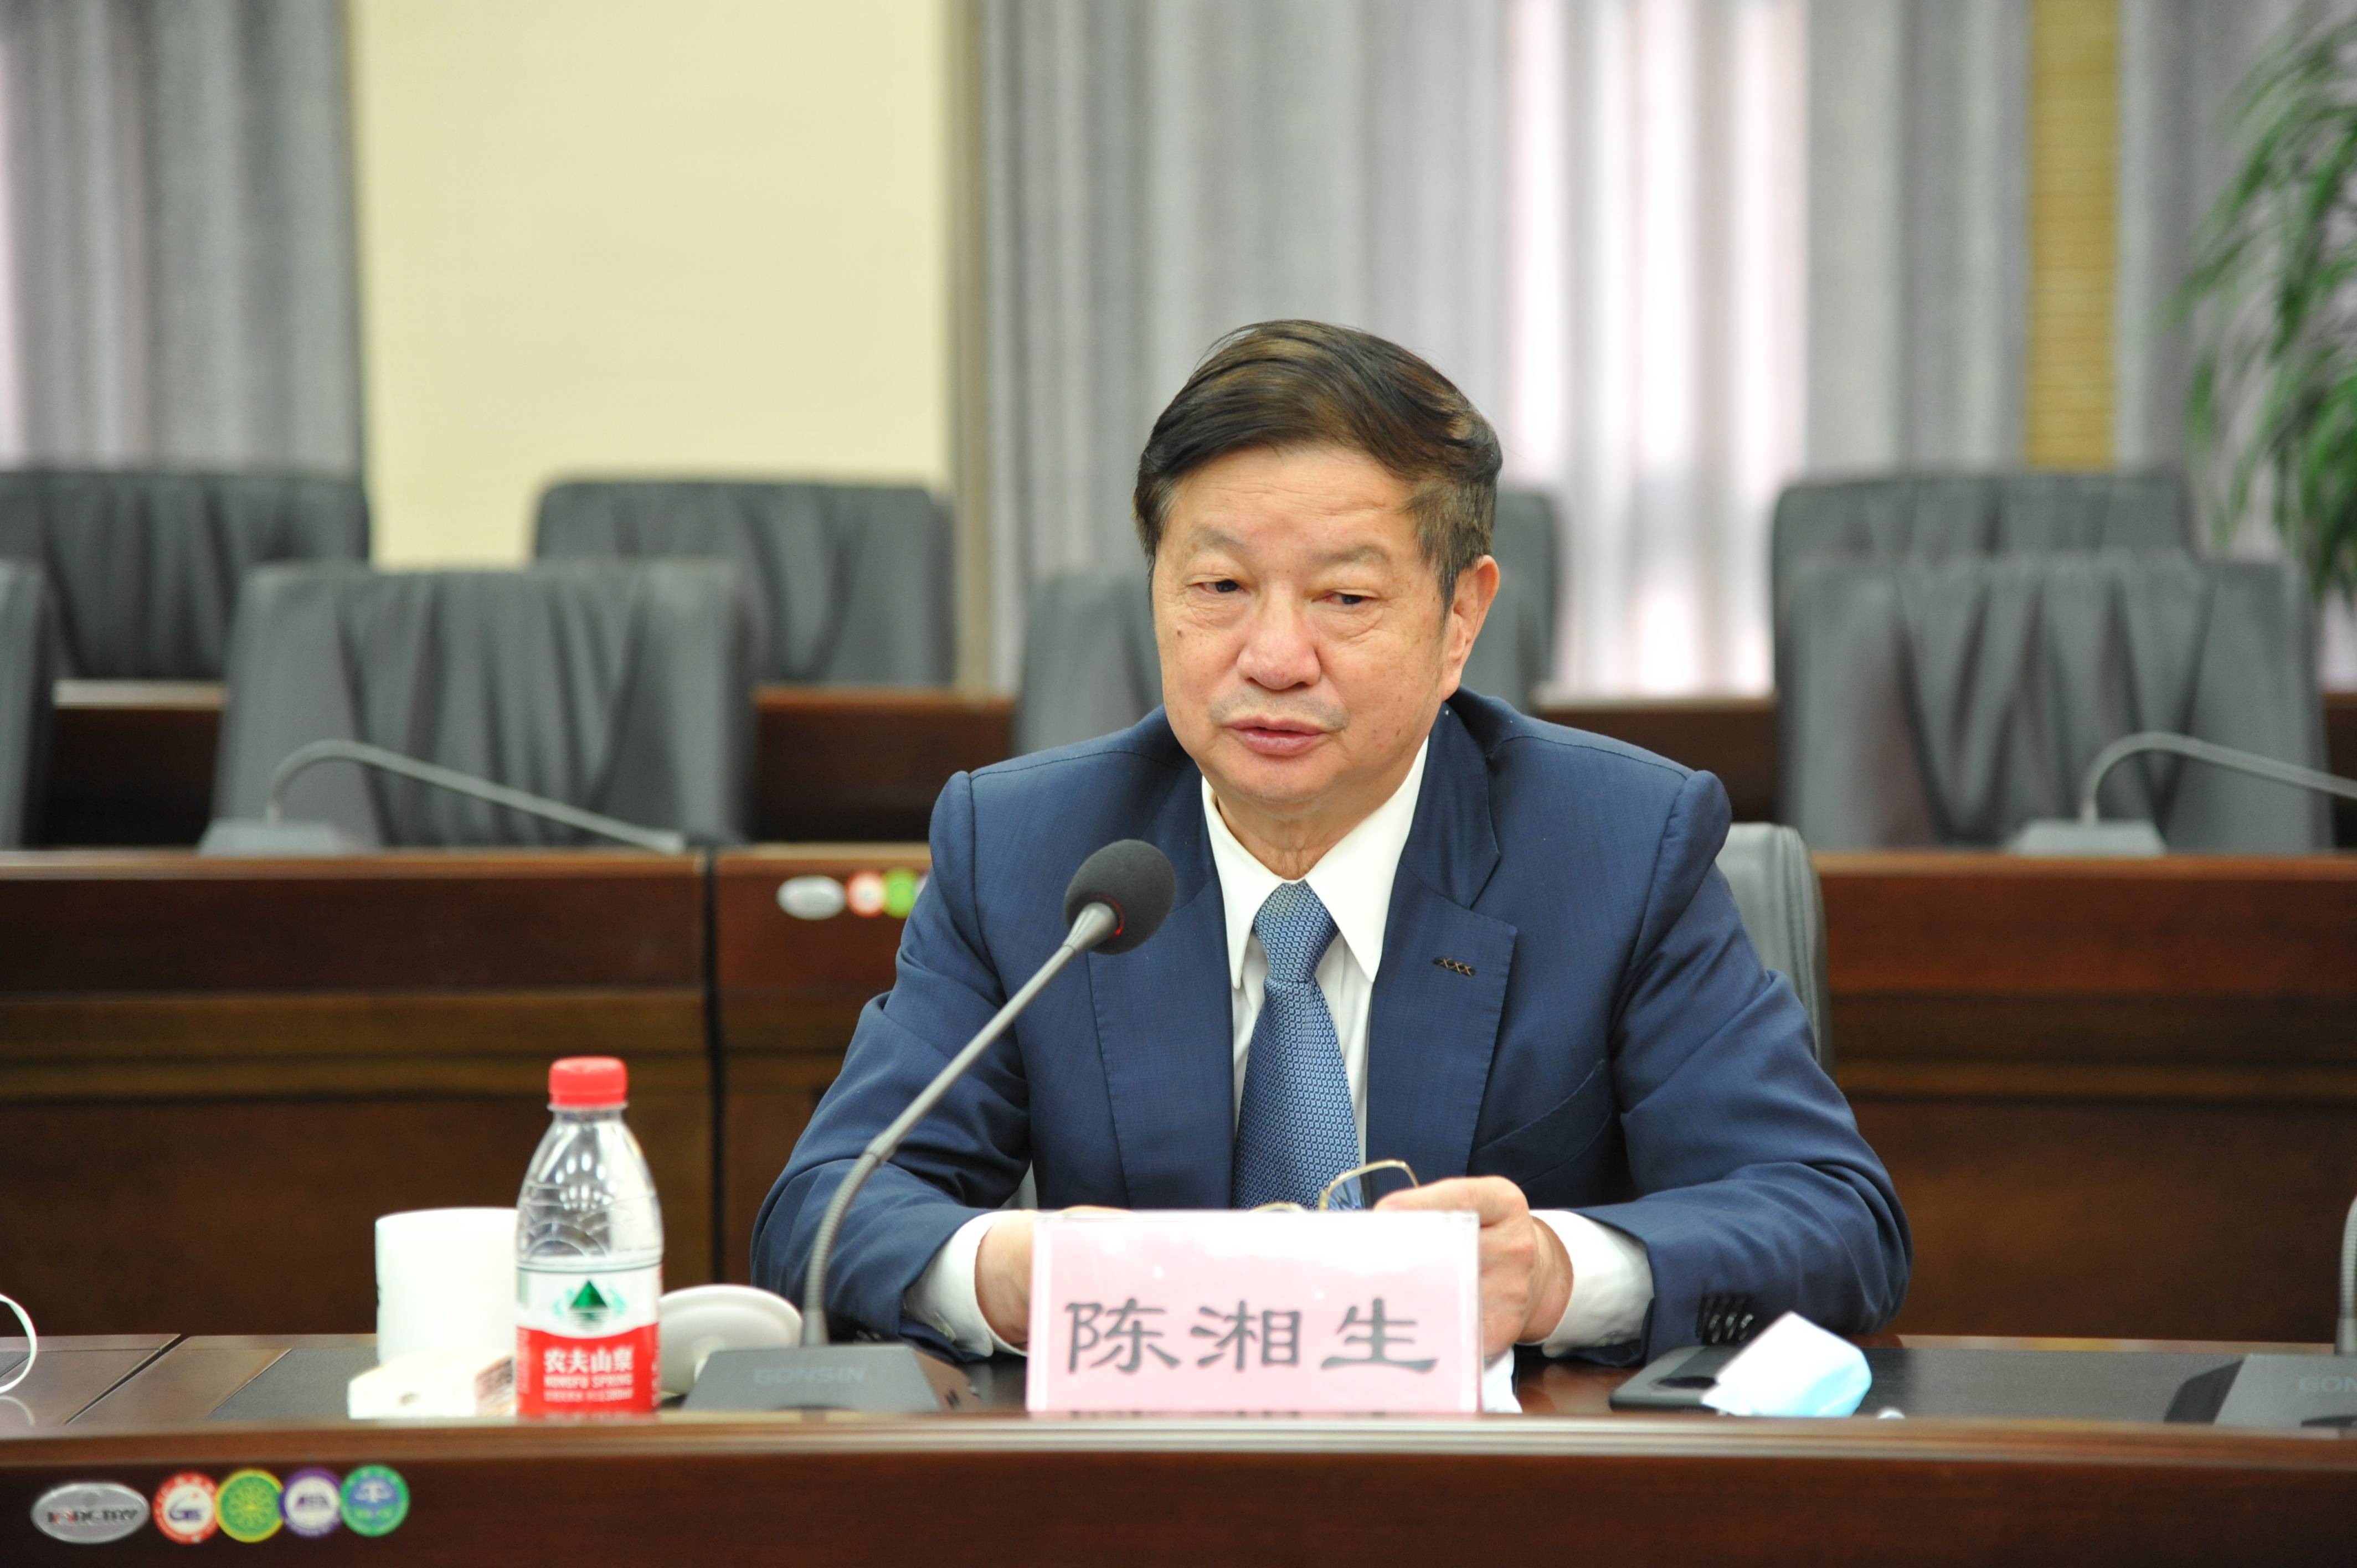 盾构及掘进技术国家重点实验室2021年度学术委员会议在郑州召开